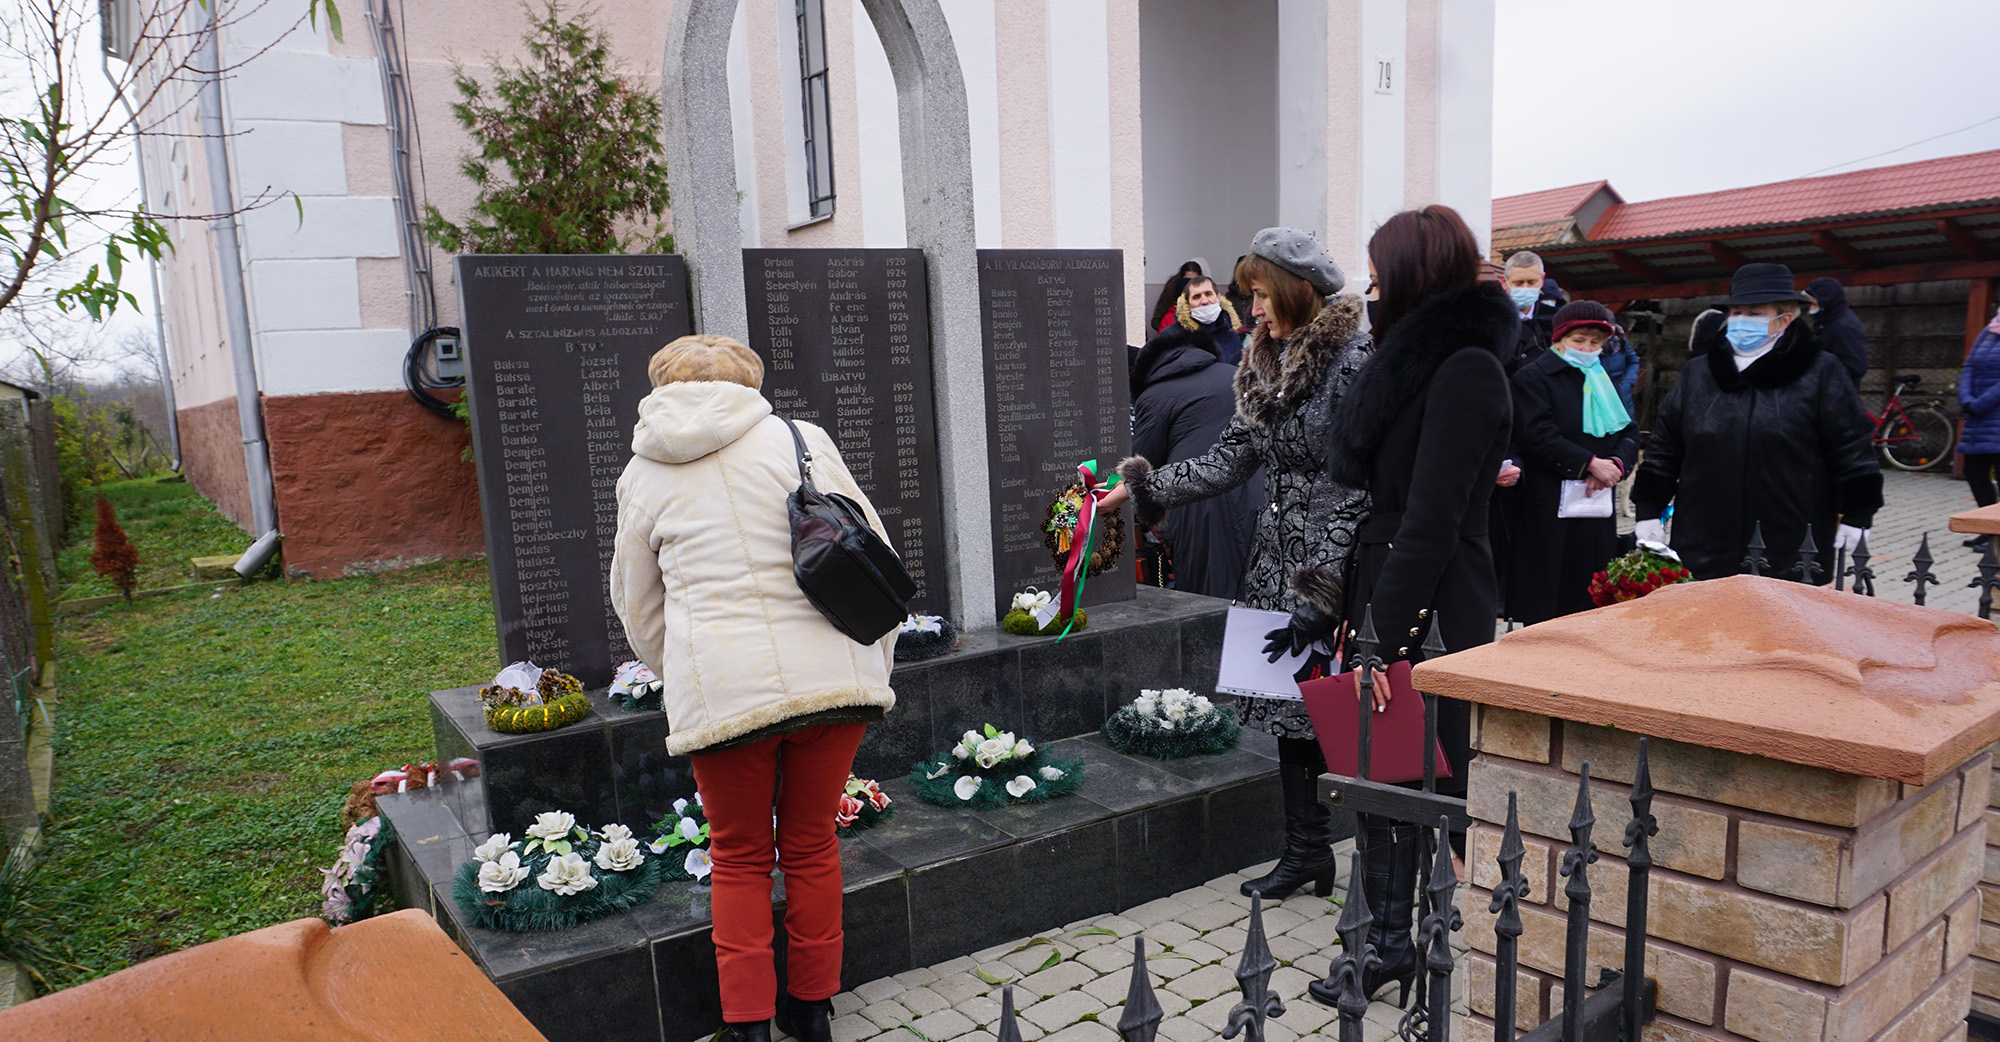 22 ноября в селе Батово состоялось памятное мероприятие в честь жертв сталинских репрессий. Учитывая эпидемию, мероприятие проходило в узком кругу.